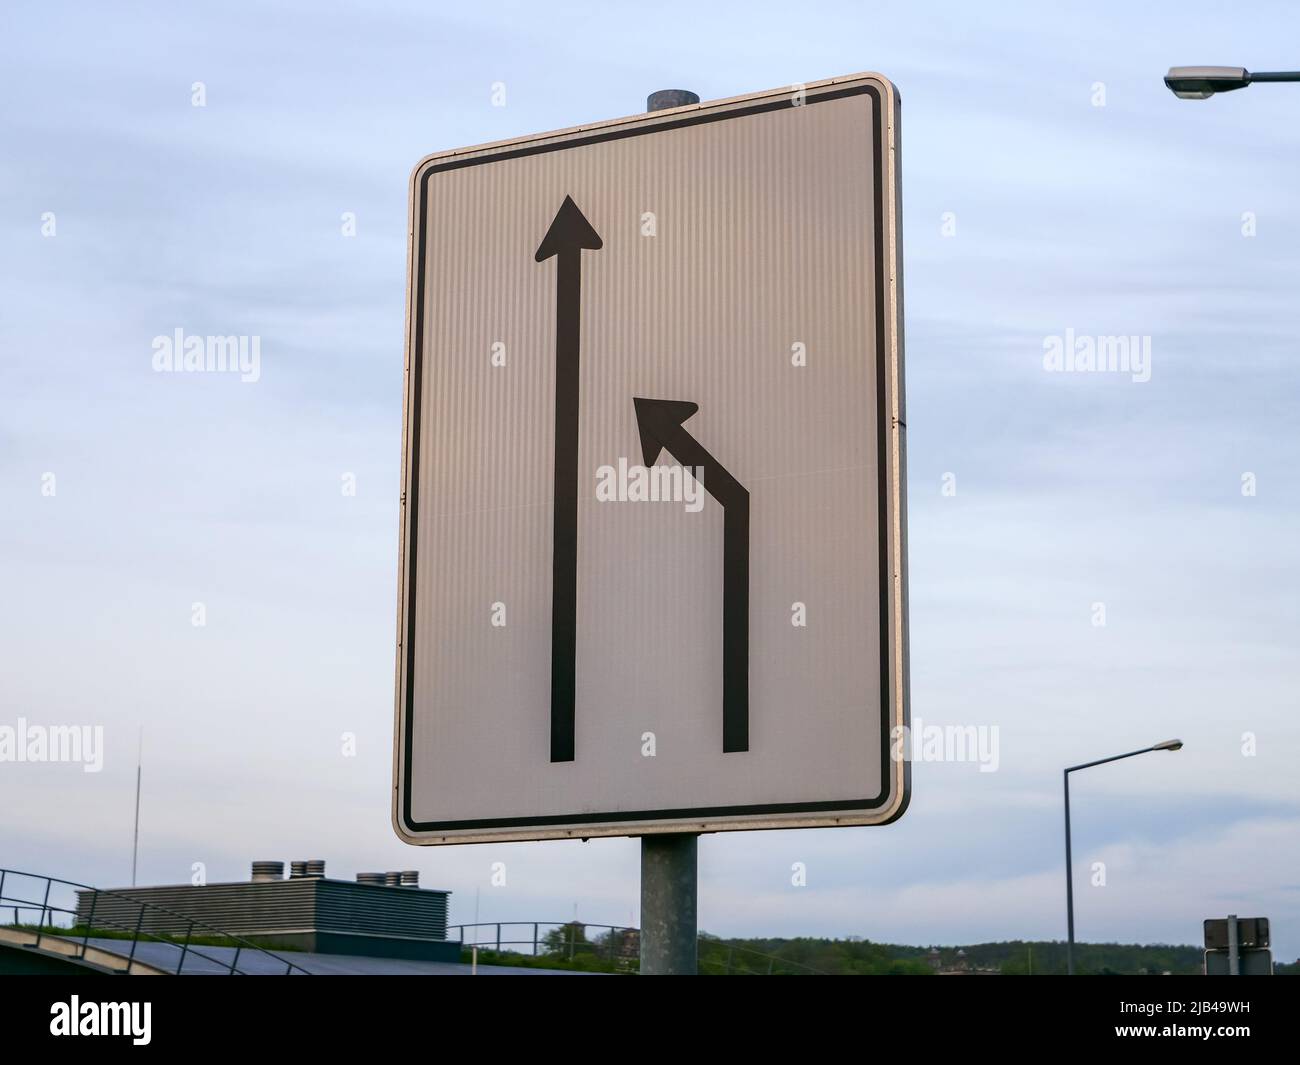 Incorpórese a la izquierda en la señal de tráfico de Alemania. El carril derecho termina y los conductores de coches deben cambiar al carril izquierdo. Señal de carretera con flechas. Foto de stock